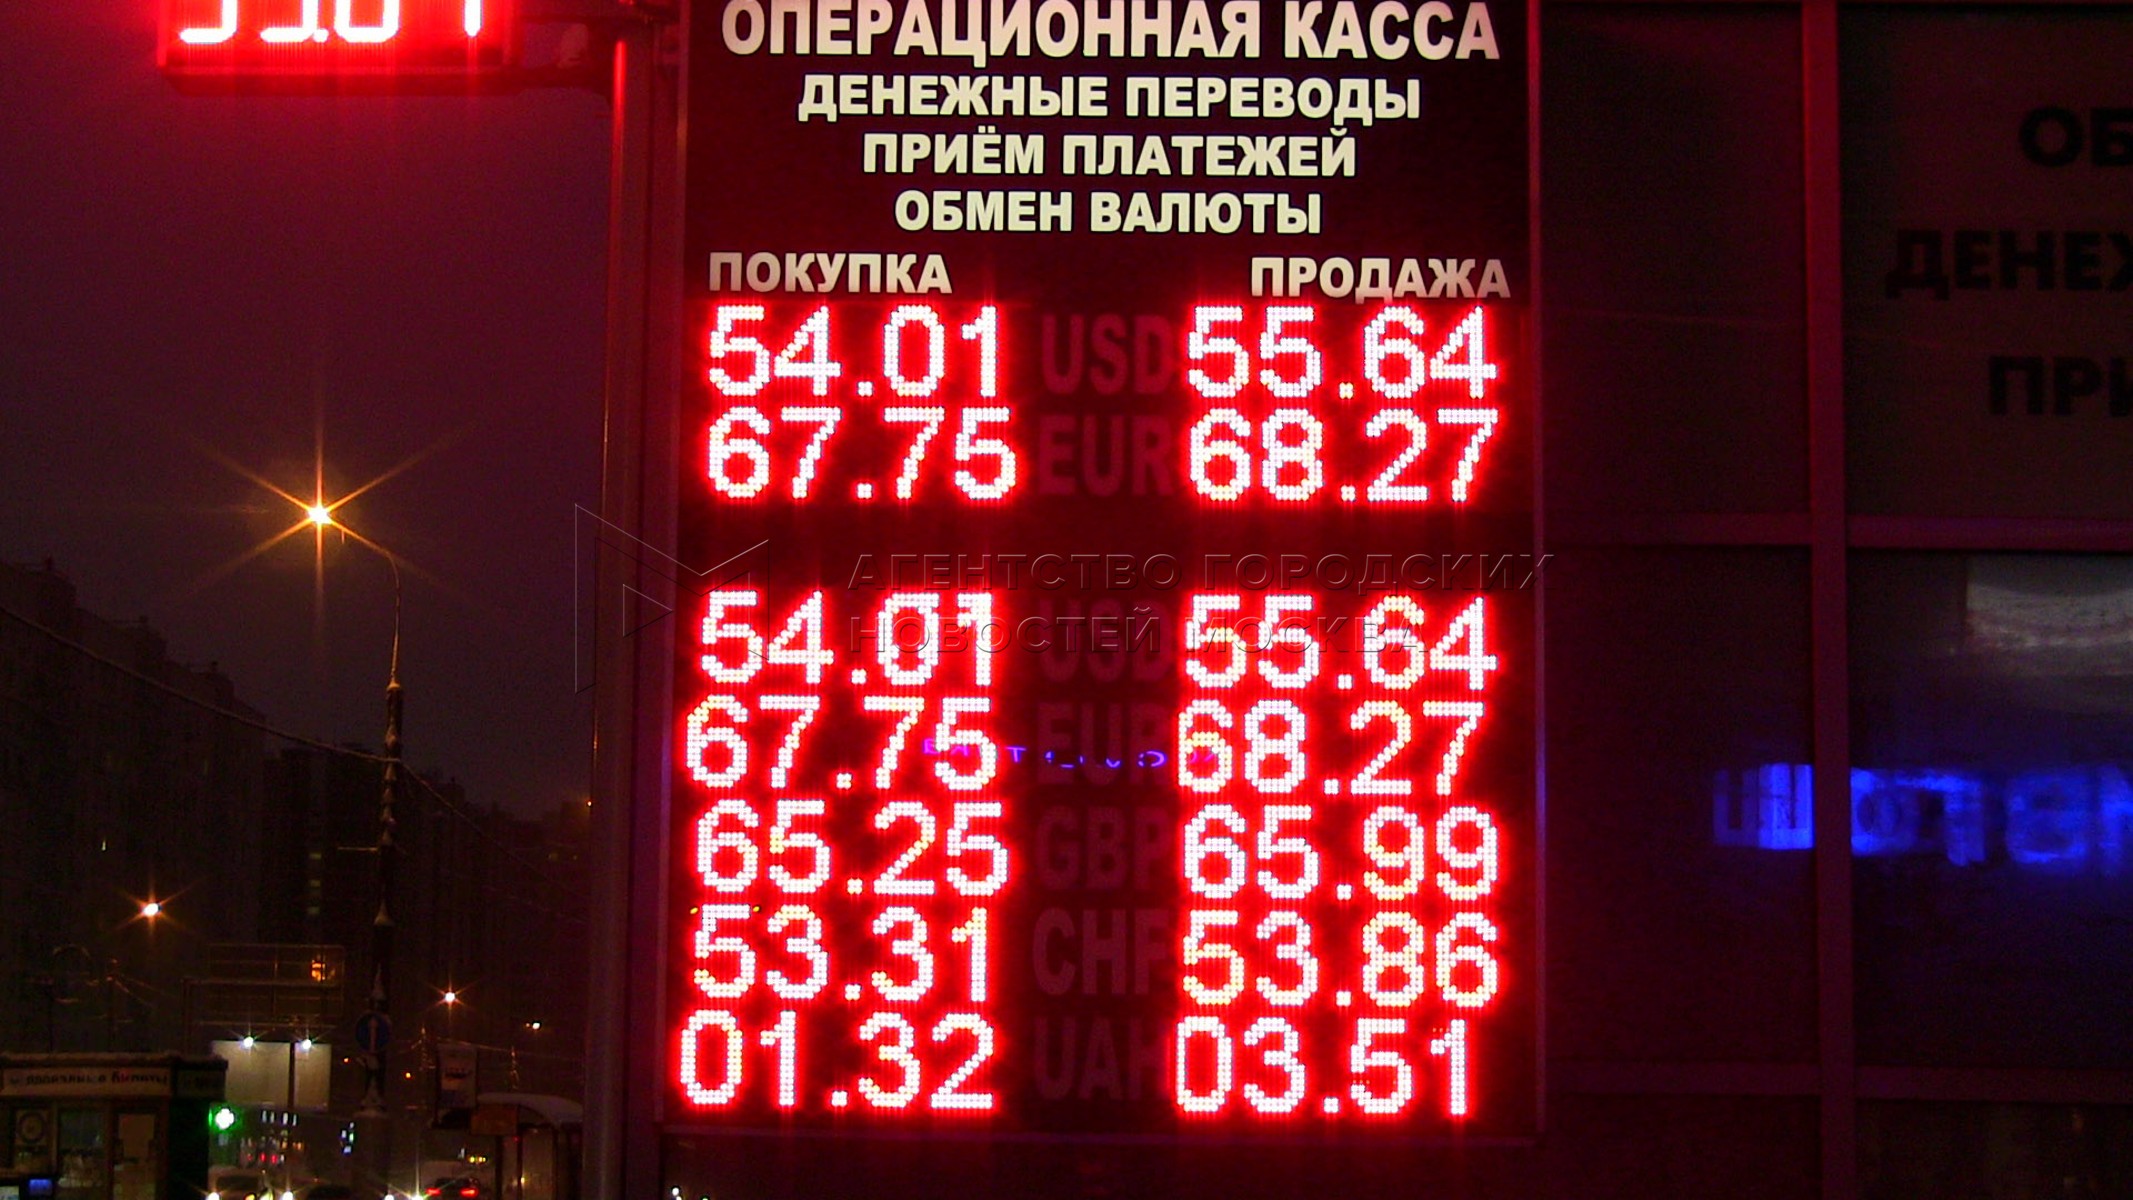 Обмен валюты москва адрес. 49 Валют. Операционные кассы обмена валют в Москве на сегодня.